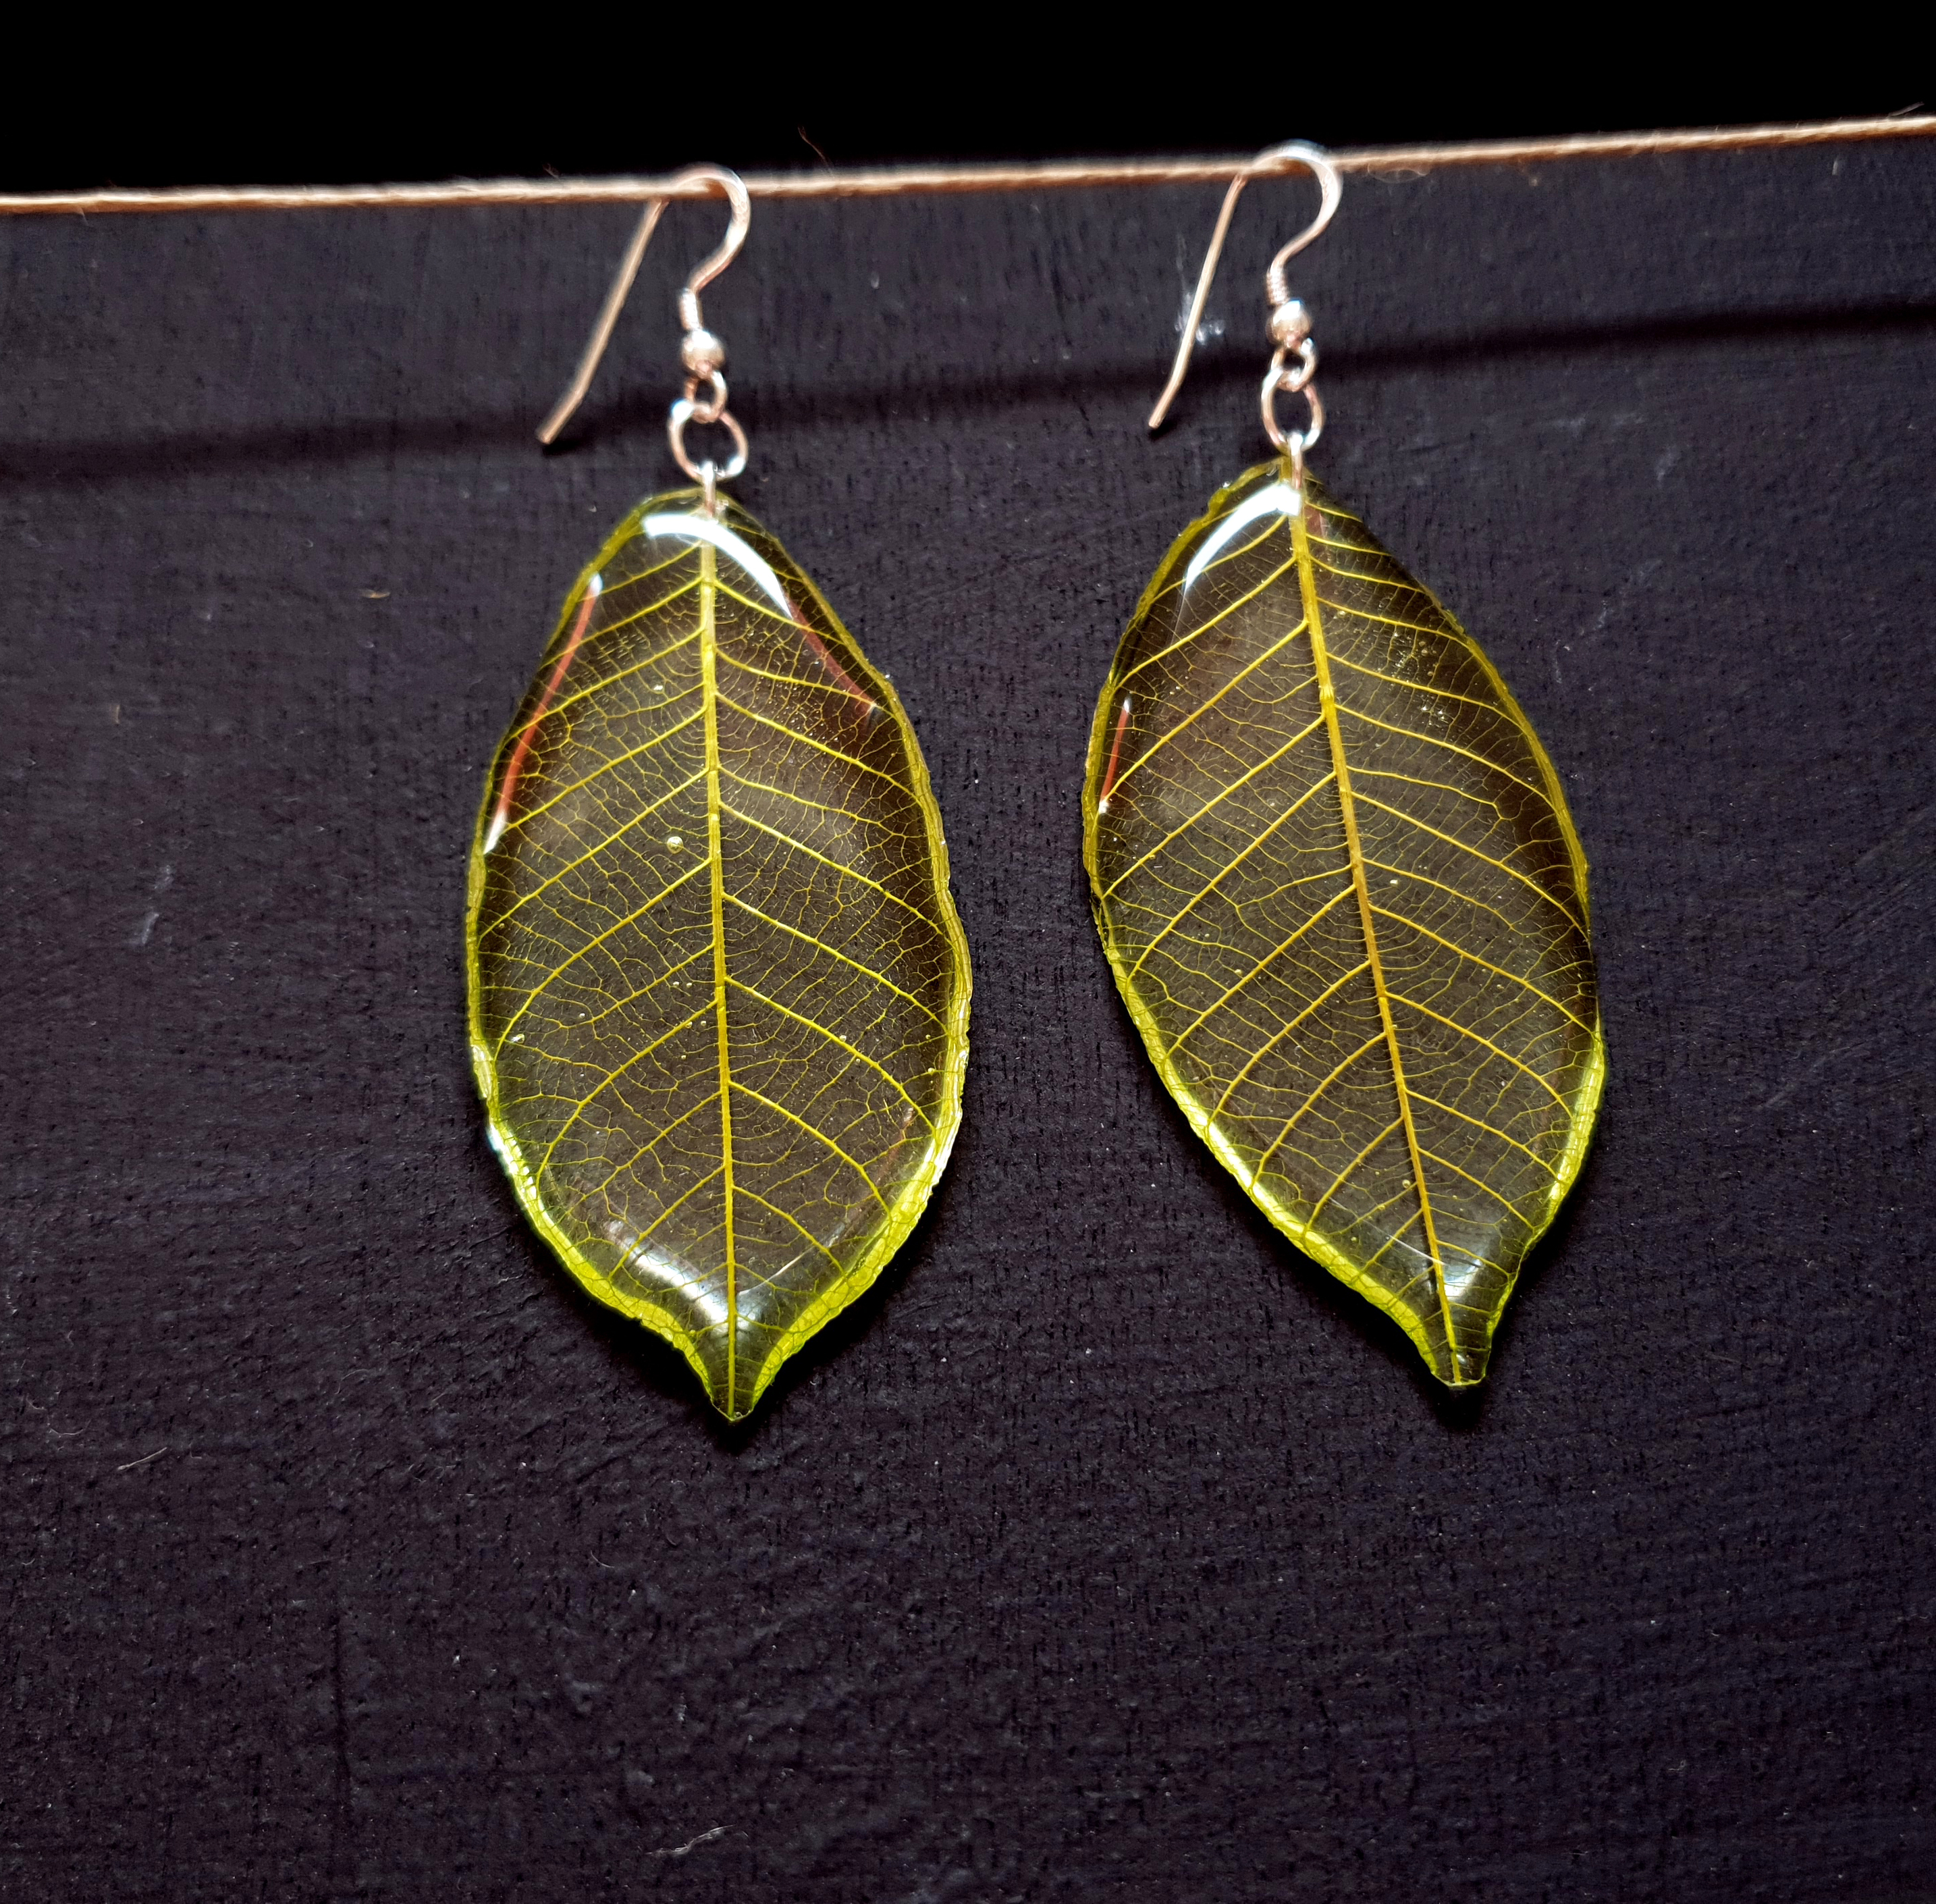 Pressed leaves earrings